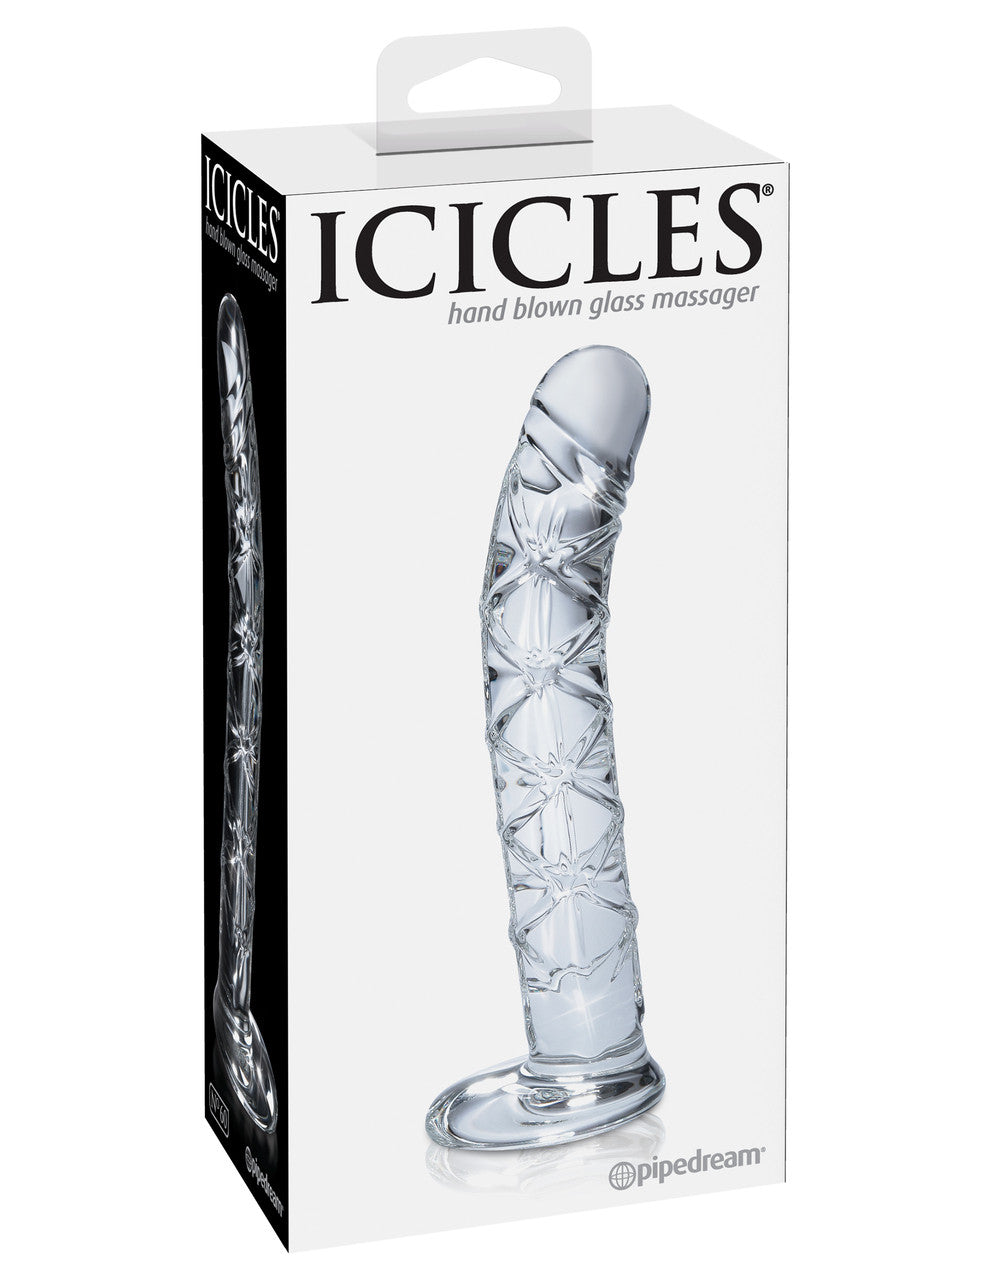 Icicles No. 60